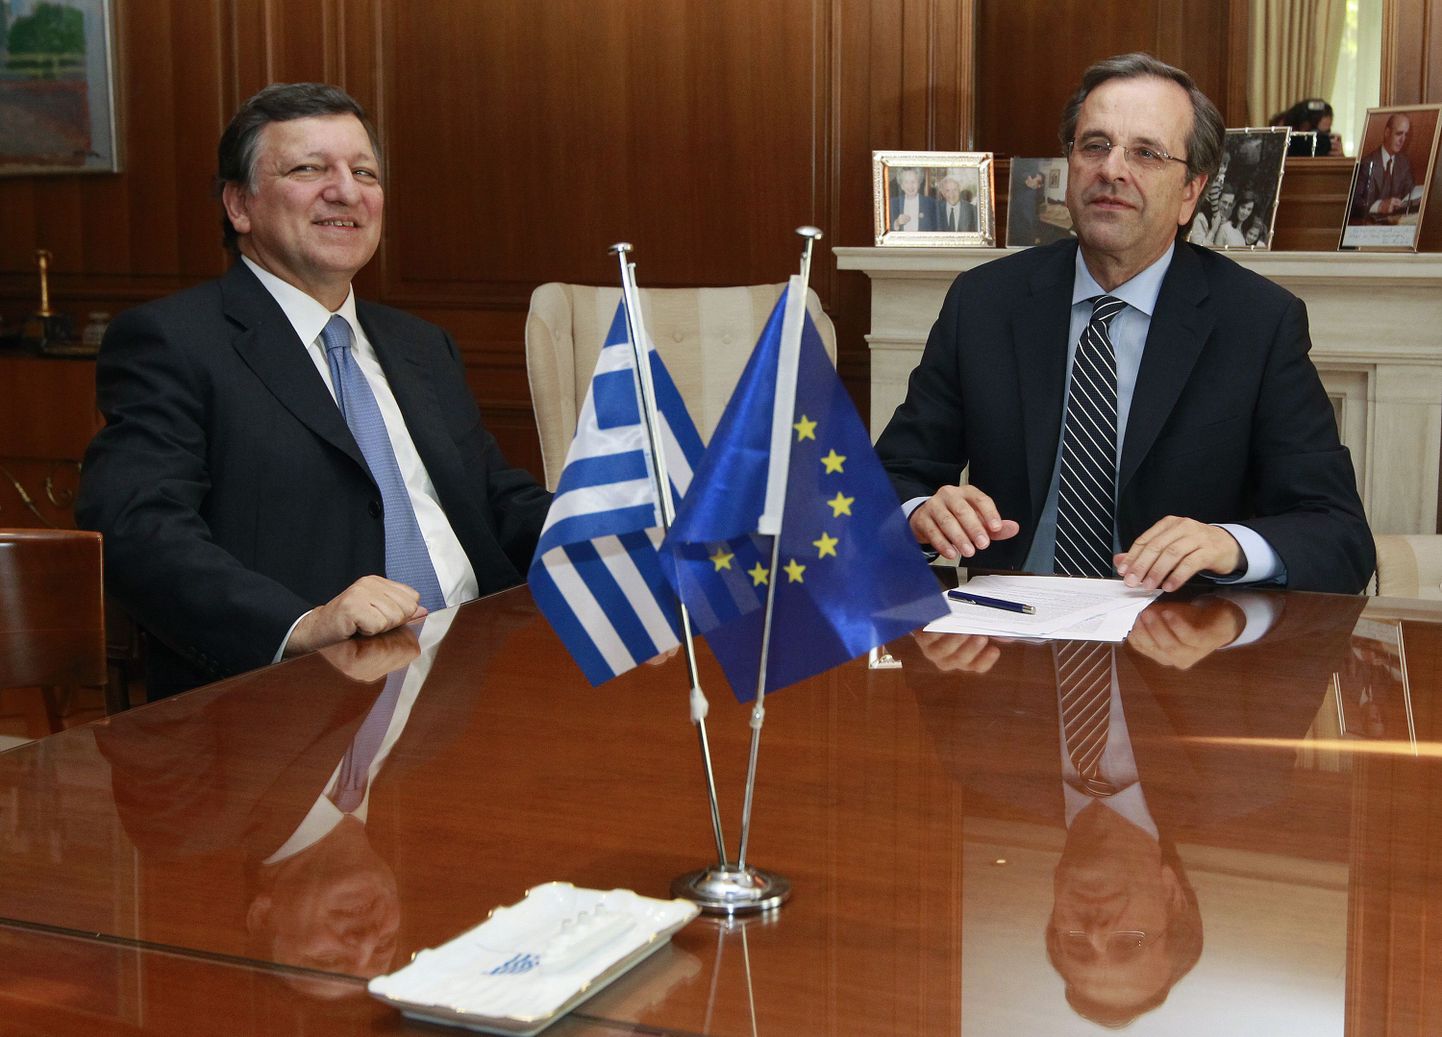 Kreeka peaminister Antonis Samaras (paremal) ja Euroopa Komisjoni president Jose Manuel Barroso.